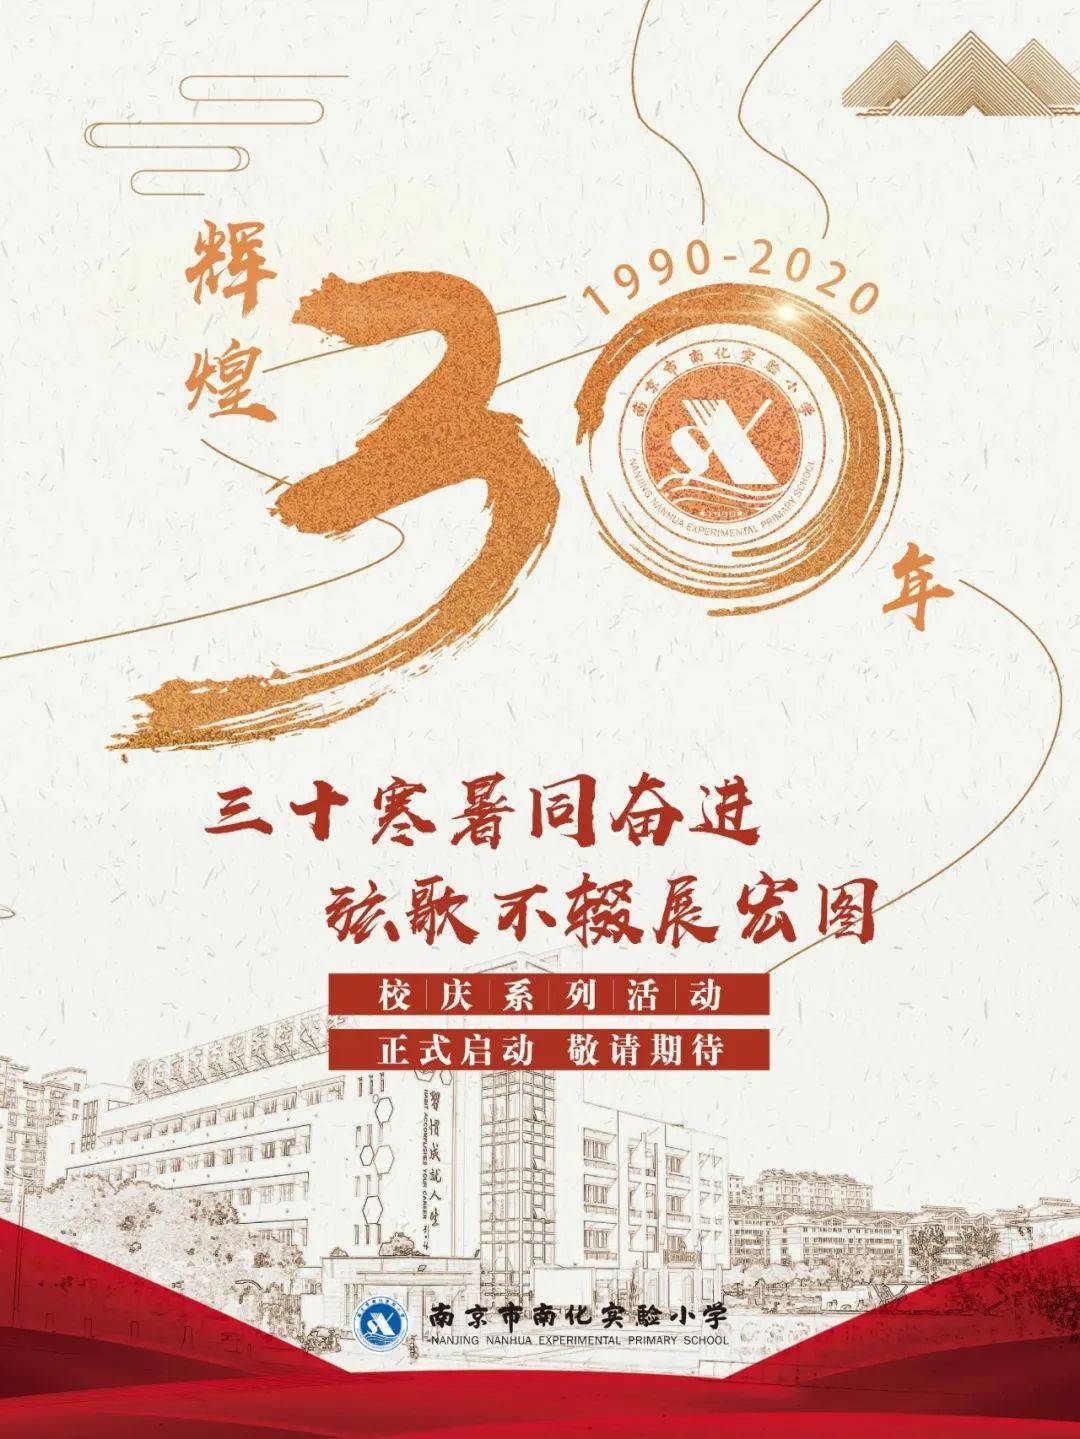 南化实验小学30周年校庆海报